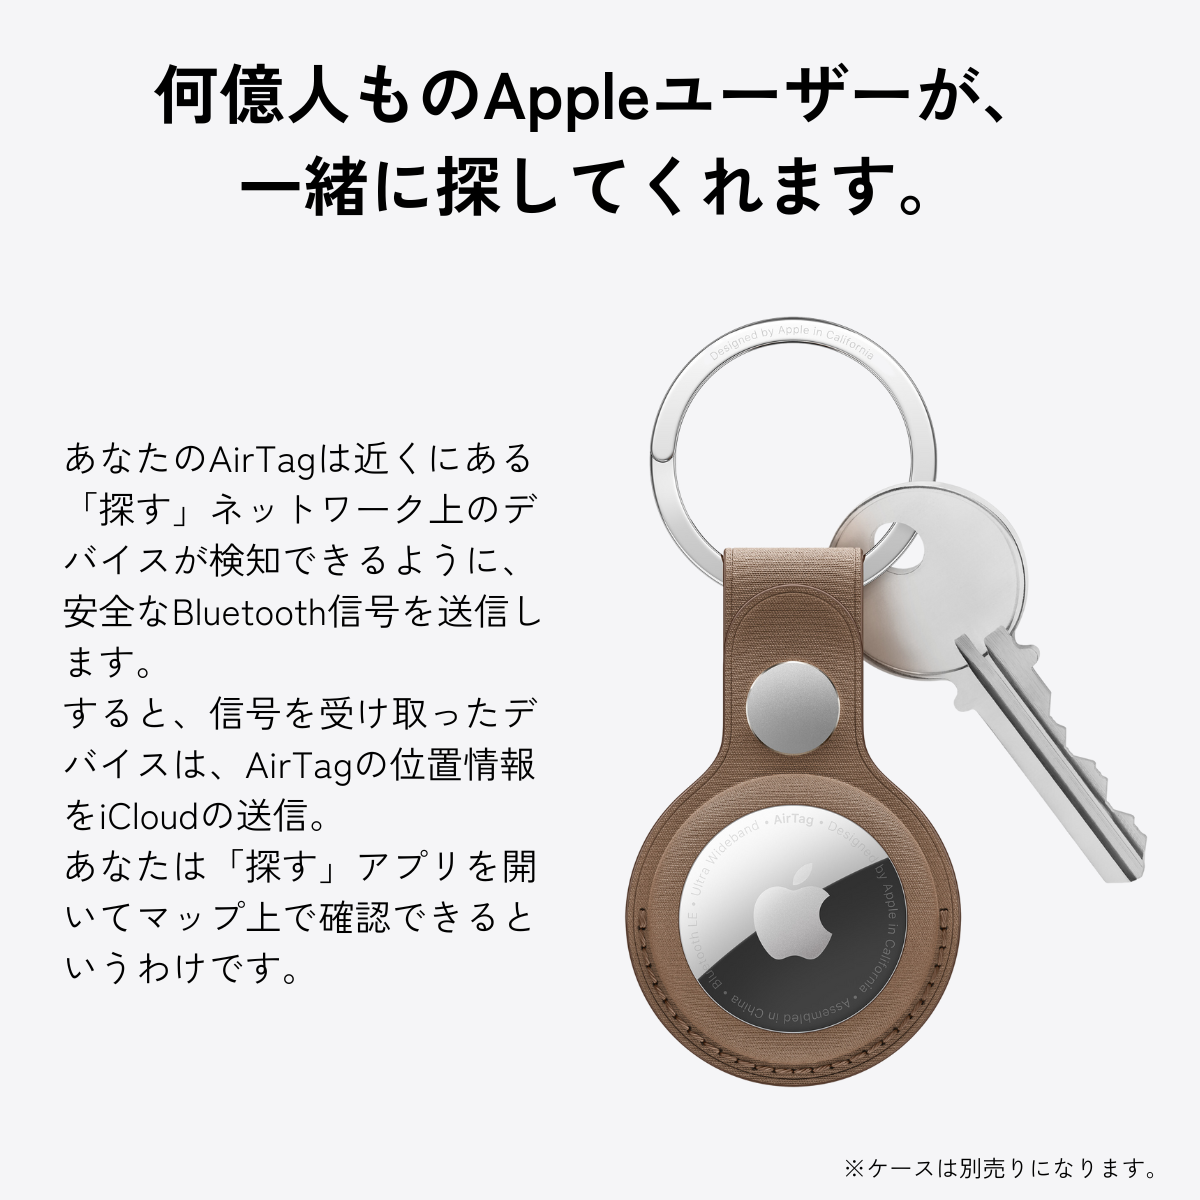  воздушный бирка Apple AirTag Apple 2 шт стандартный товар новый товар простой инструкция имеется GPS утерян предотвращение .. предмет предотвращение бирка ключ поиск предмет .. предмет корпус 